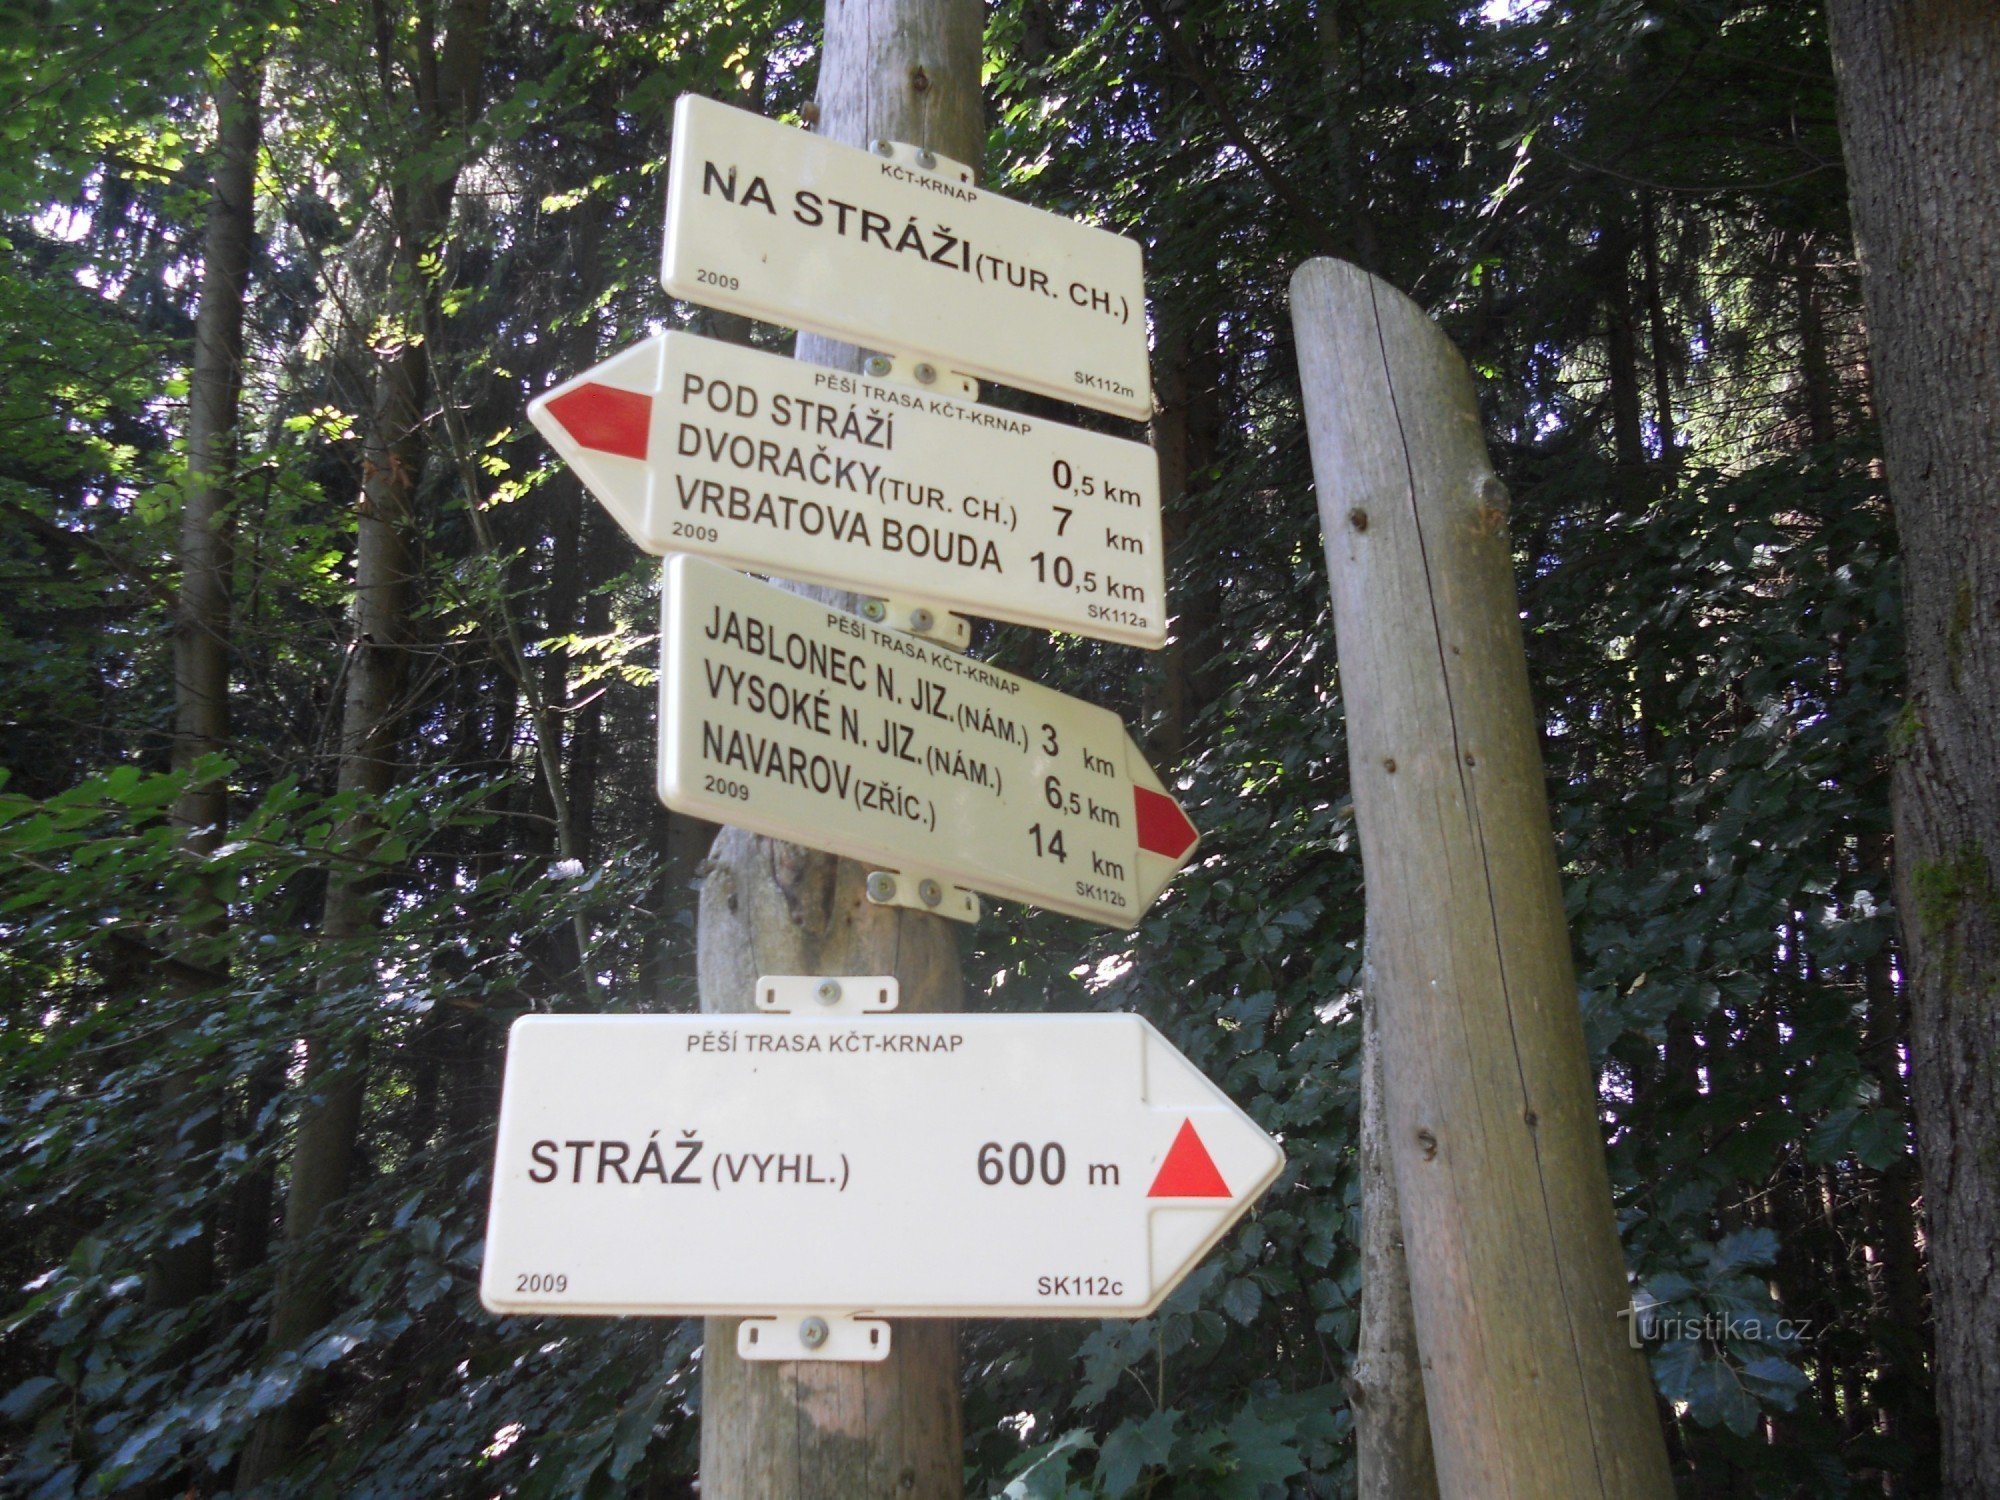 Mirador de roca Strážník (778 msnm)